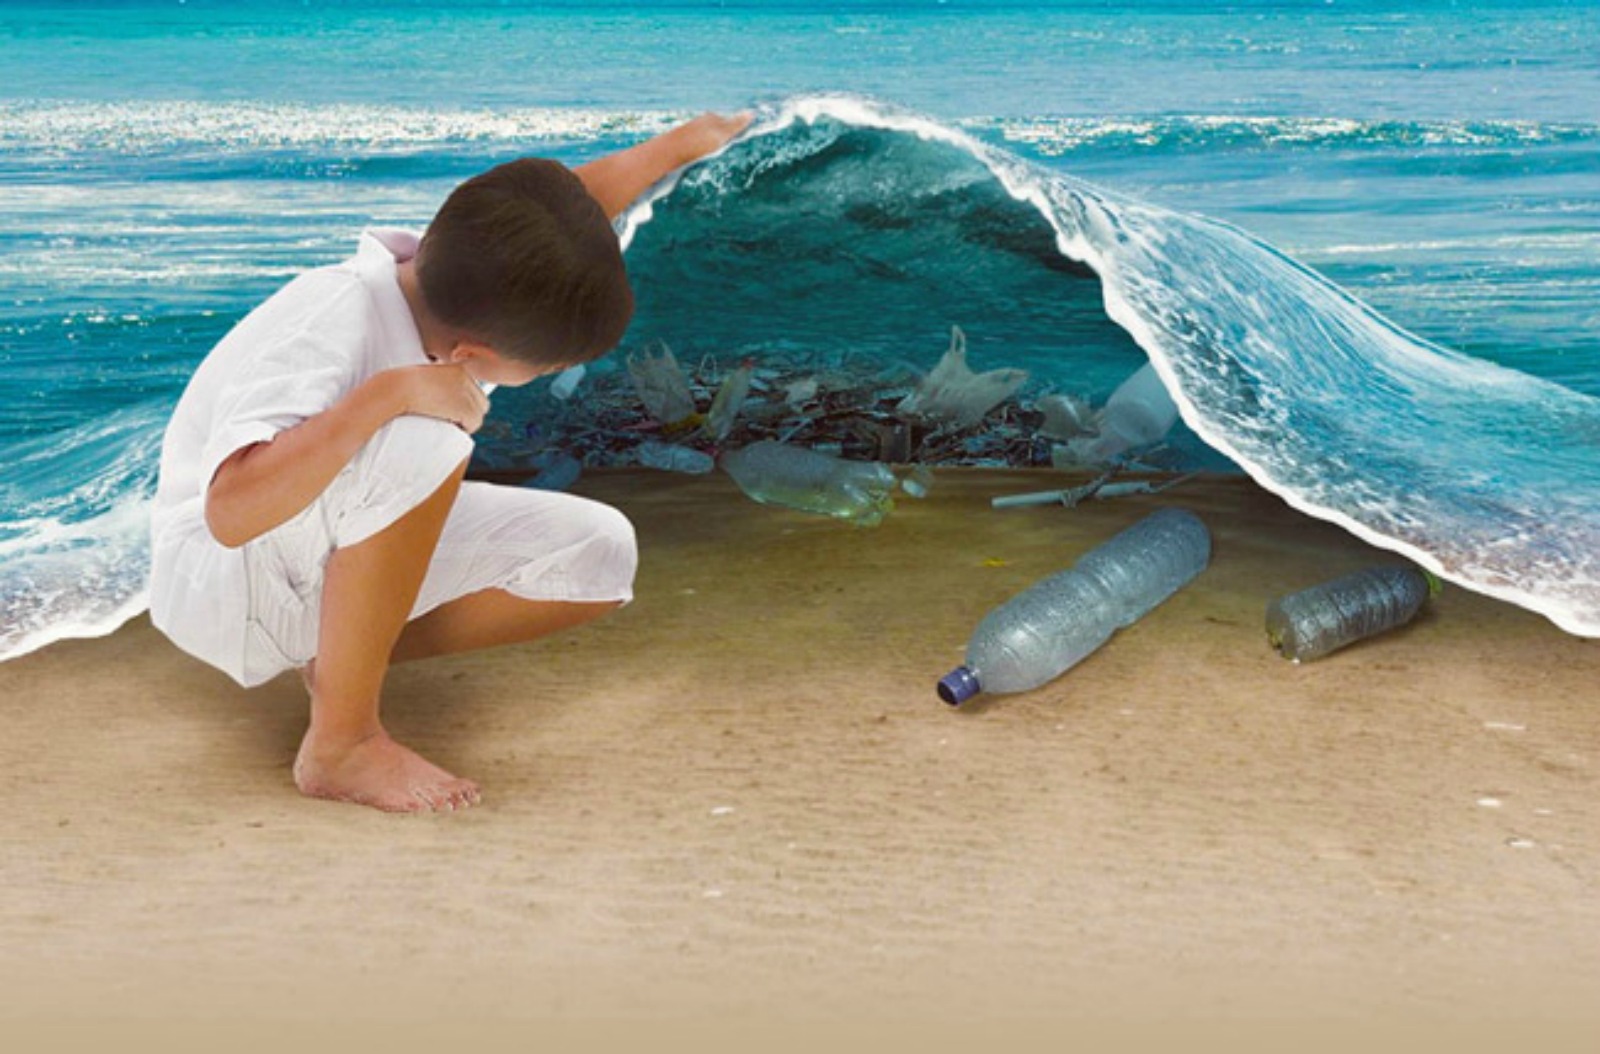 Graphic depicting trash littering the ocean floor